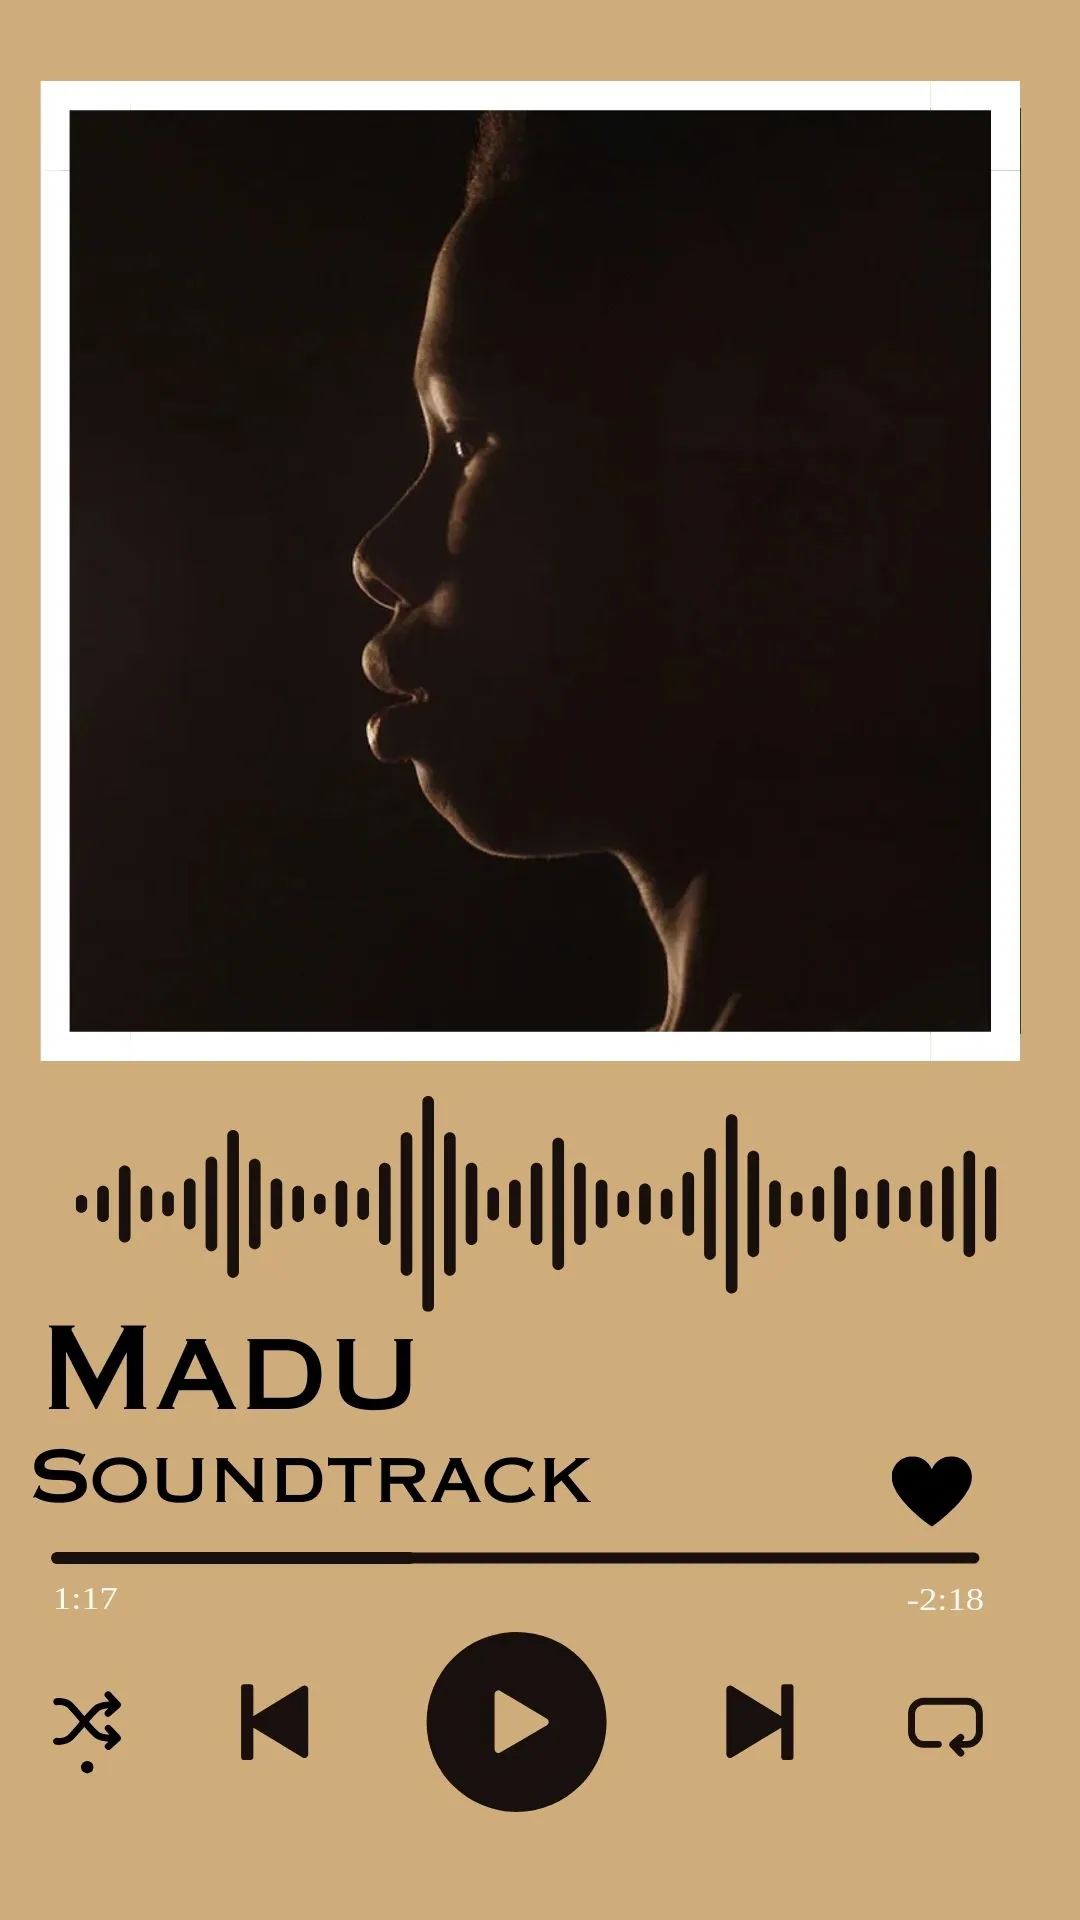 Madu Soundtrack